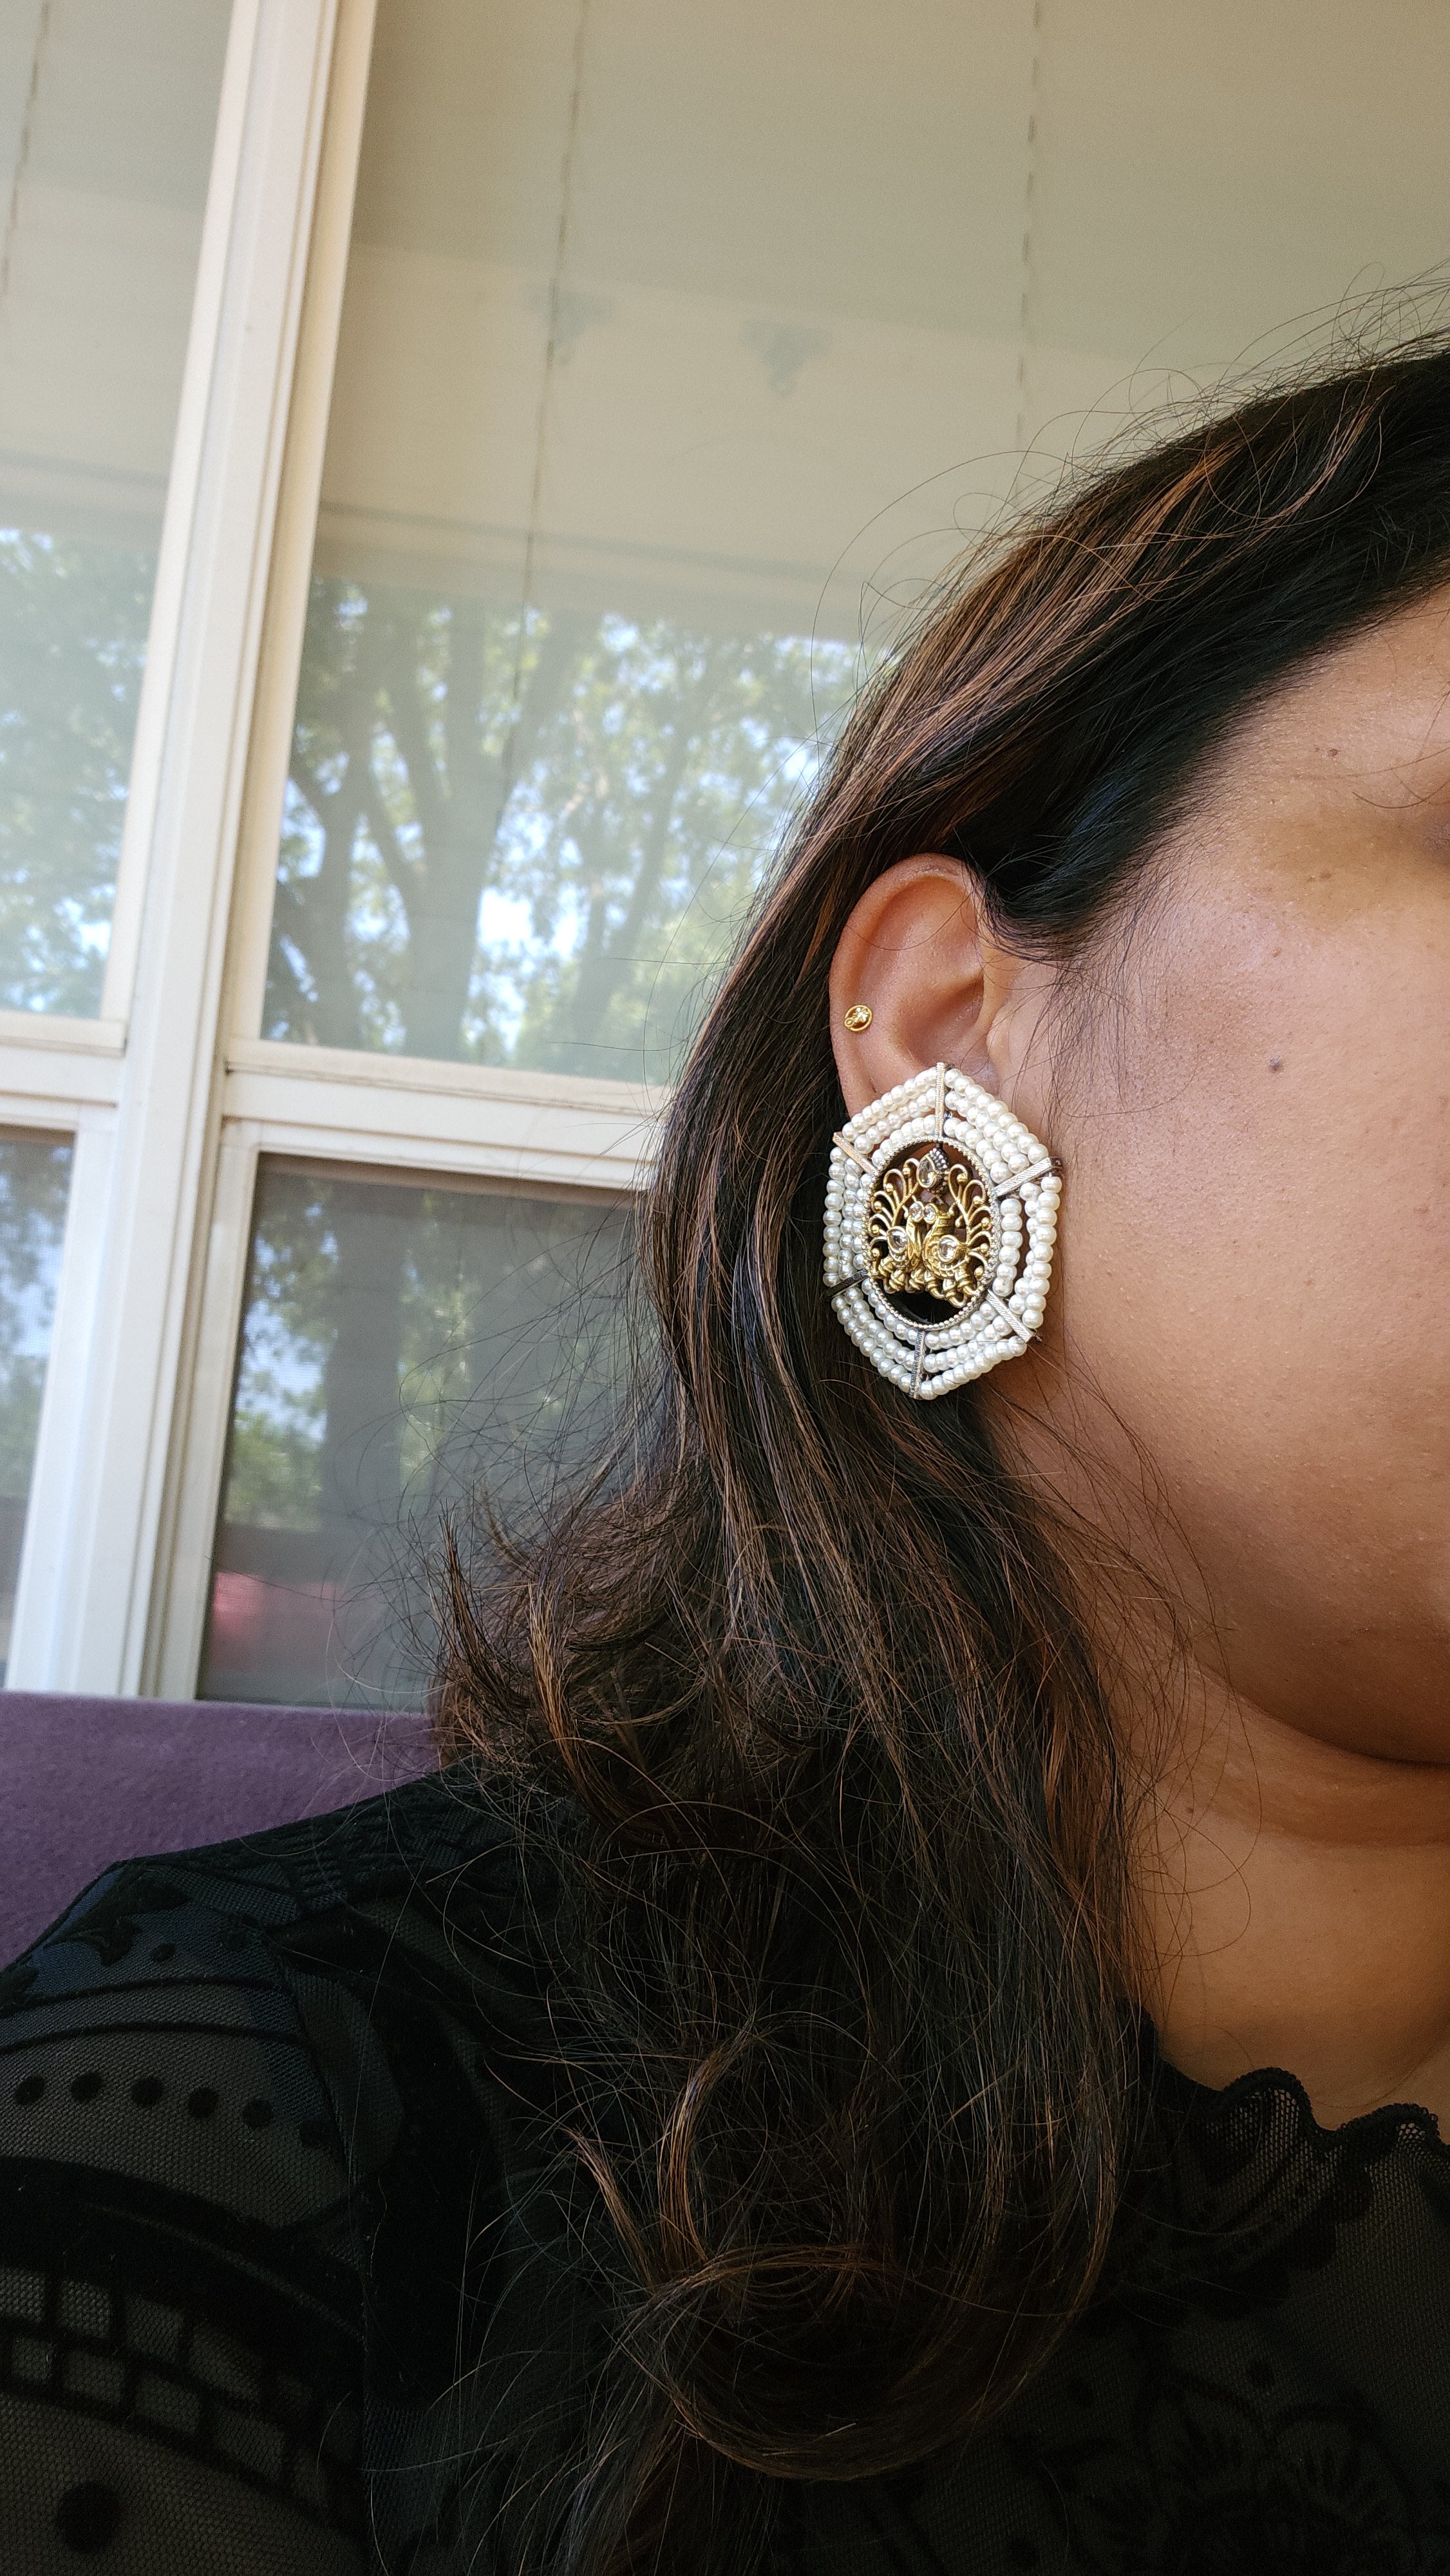 Xxl pearl silver alike stud earrings